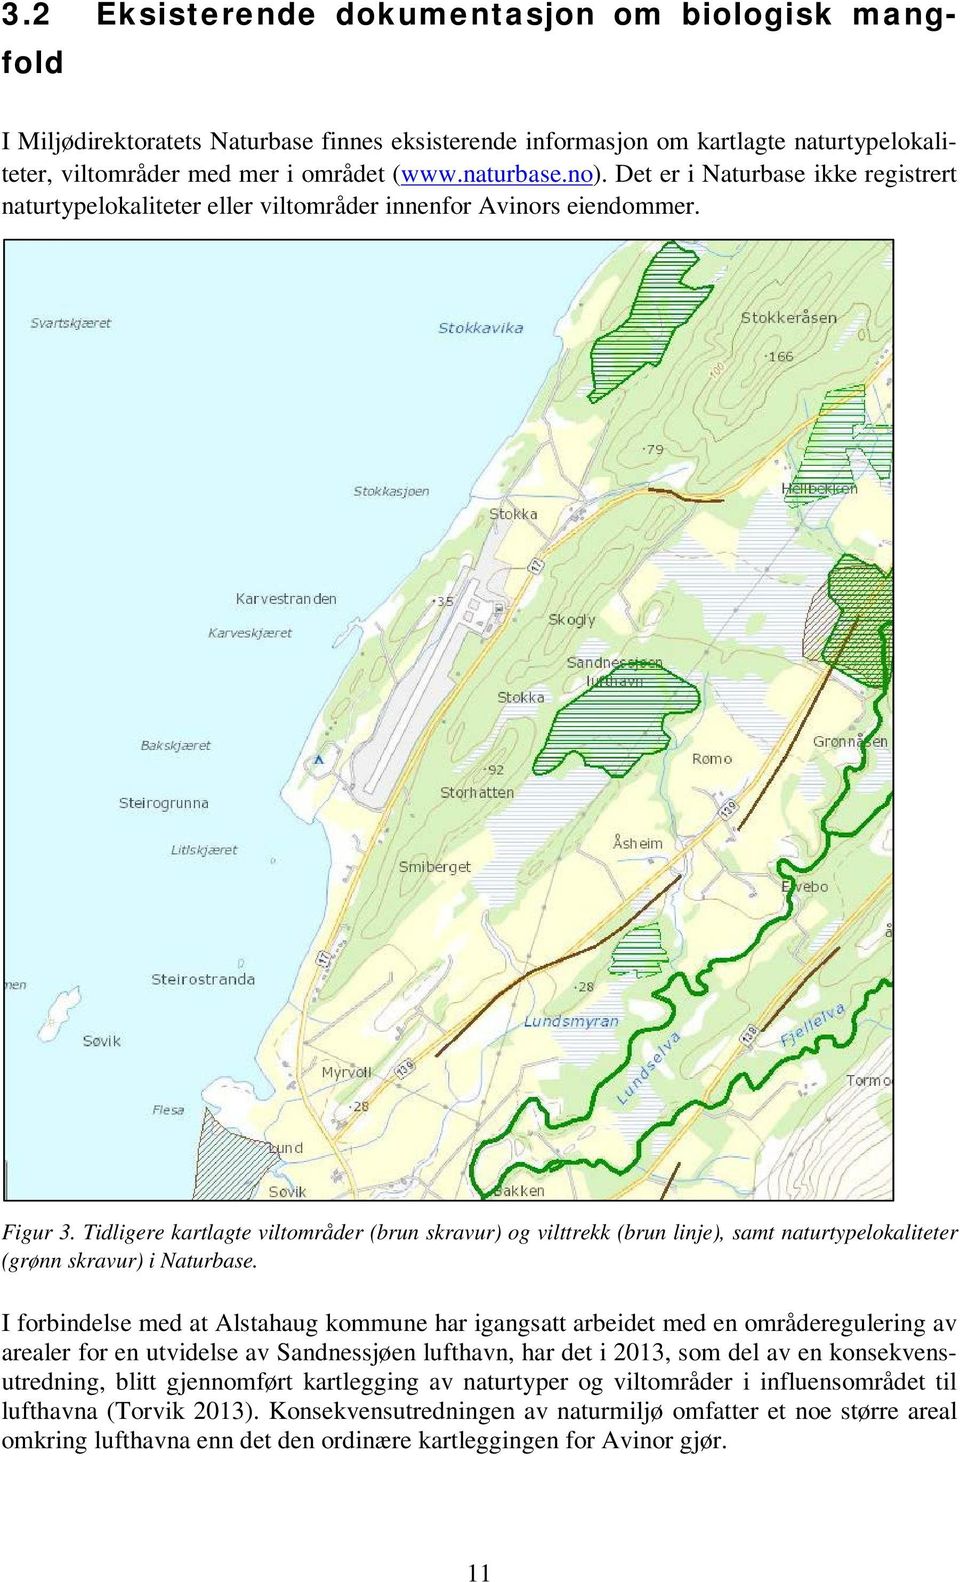 Tidligere kartlagte viltområder (brun skravur) og vilttrekk (brun linje), samt naturtypelokaliteter (grønn skravur) i Naturbase.